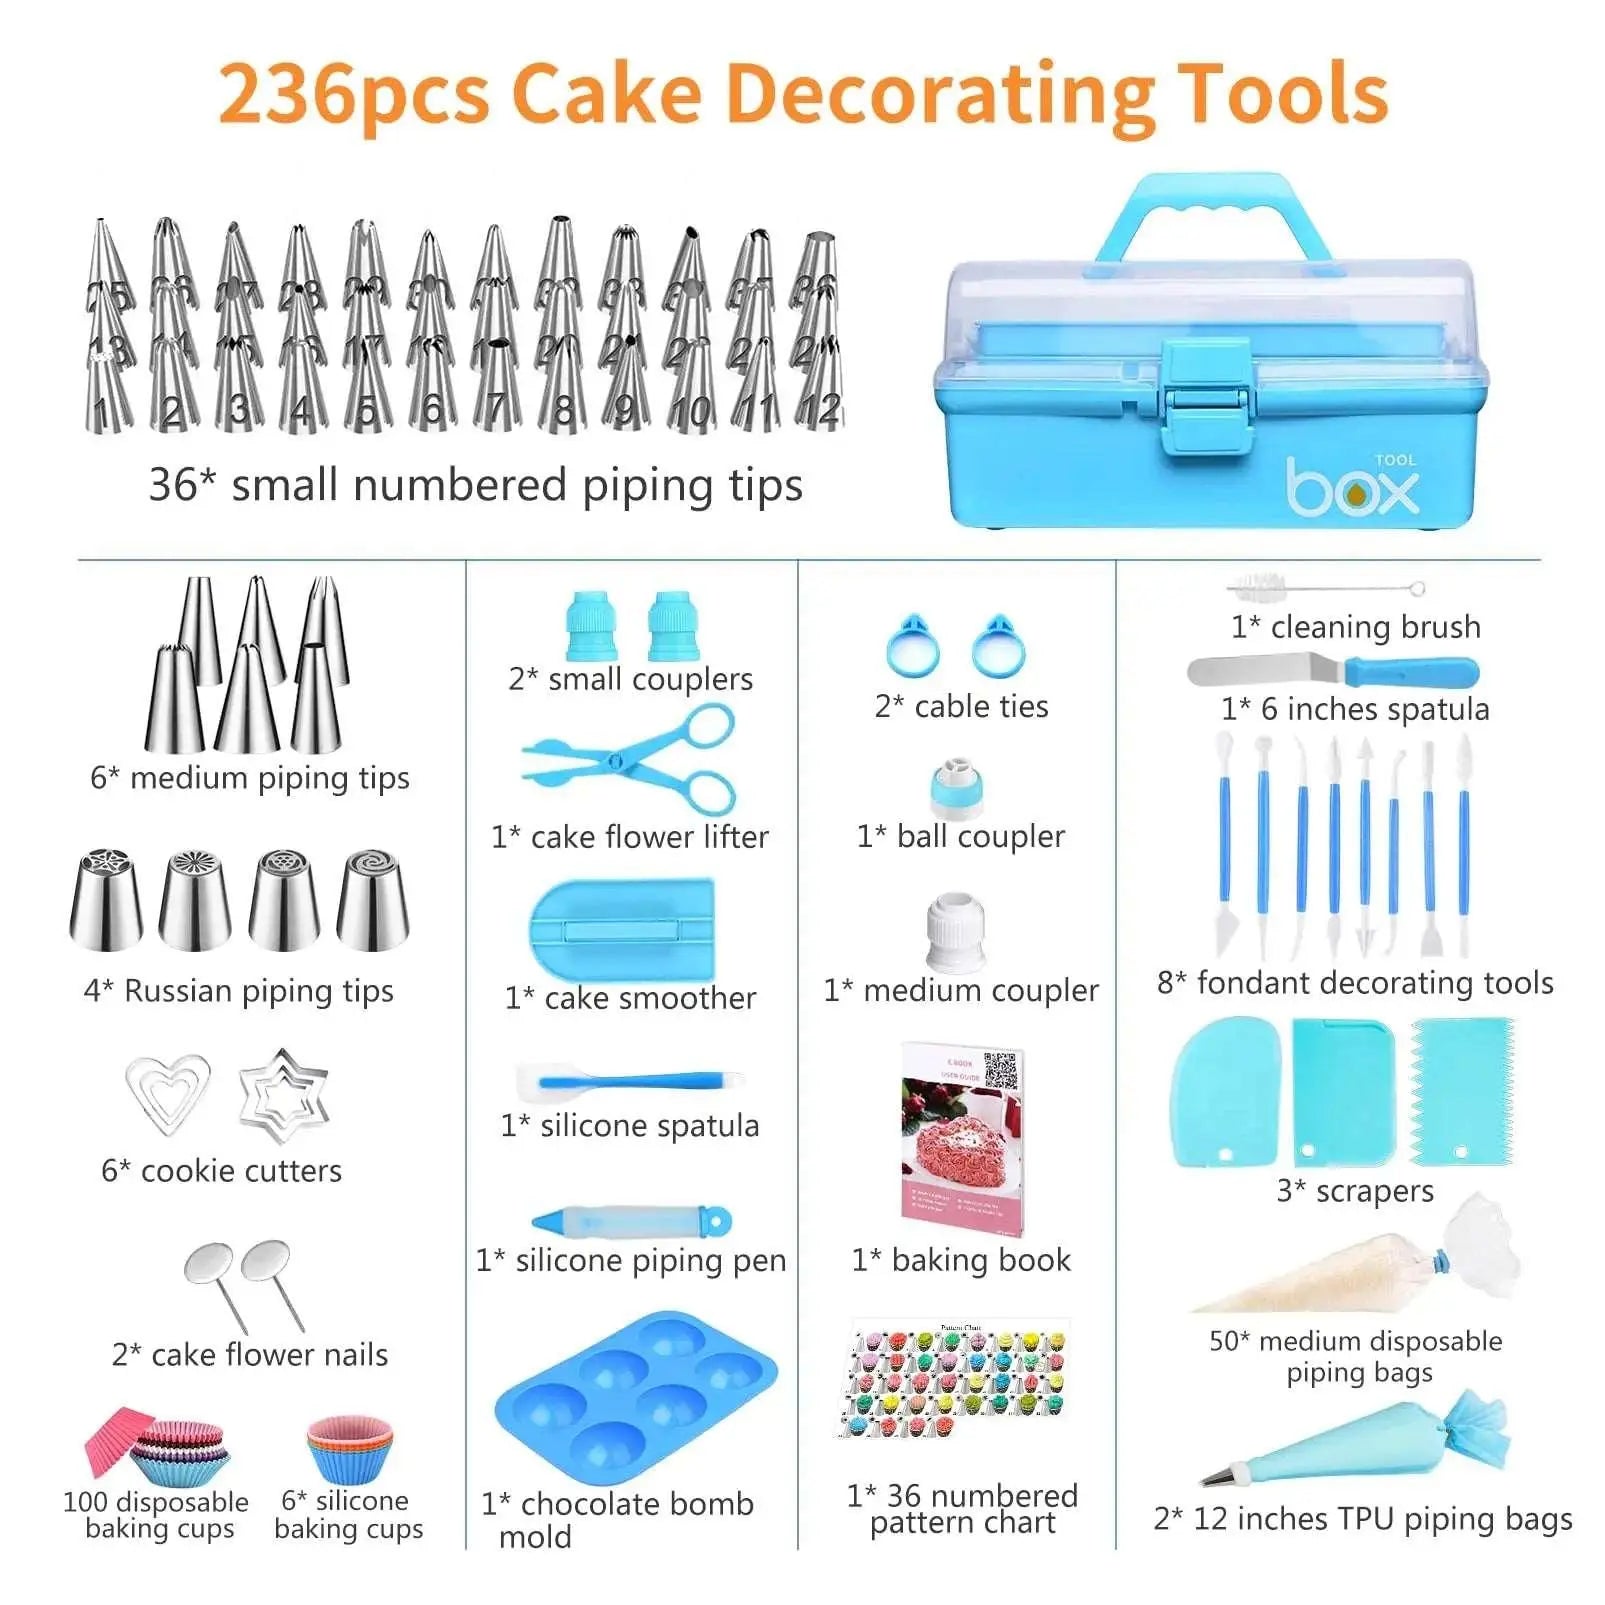  AK 236pcs Cake Tools Kit cashymart